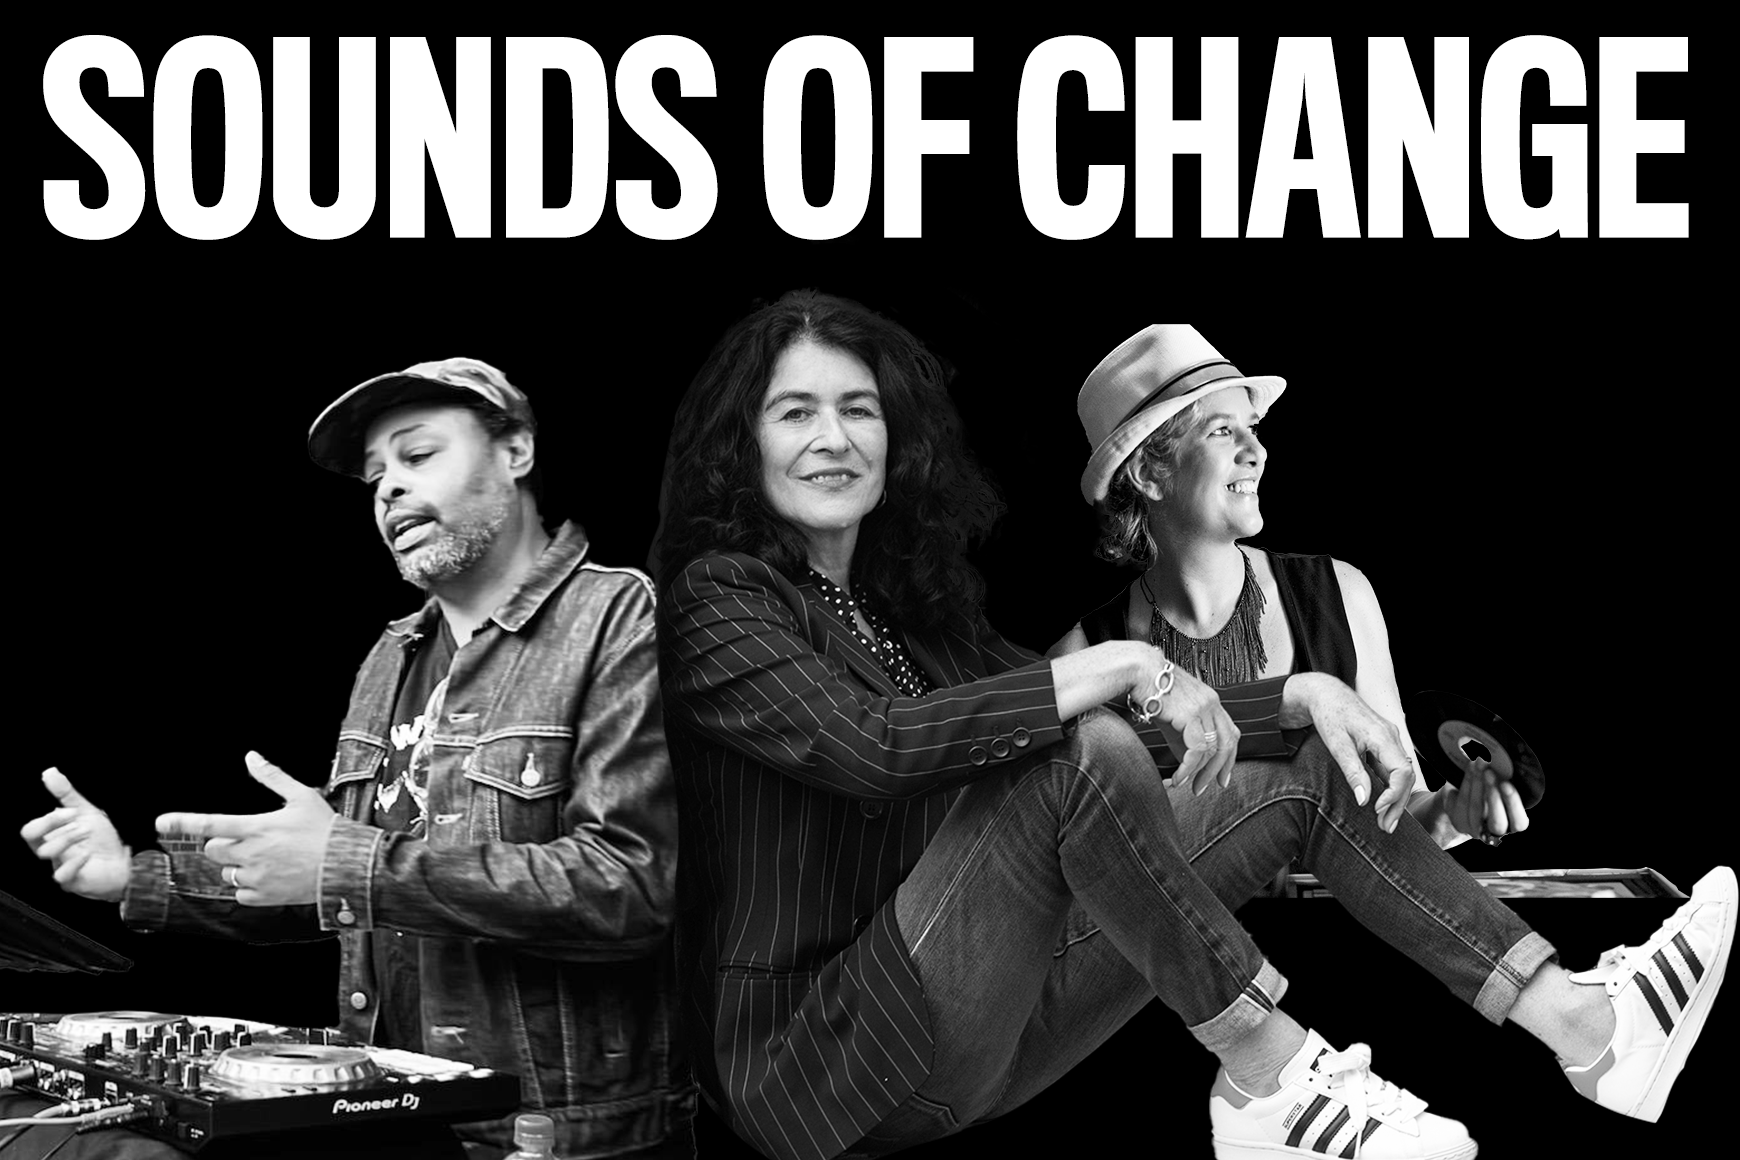 Imagem em preto e branco com texto em negrito "Sounds of Change" e colagem de DJ Misbehaviour, Operator Emz e Janette Beckman